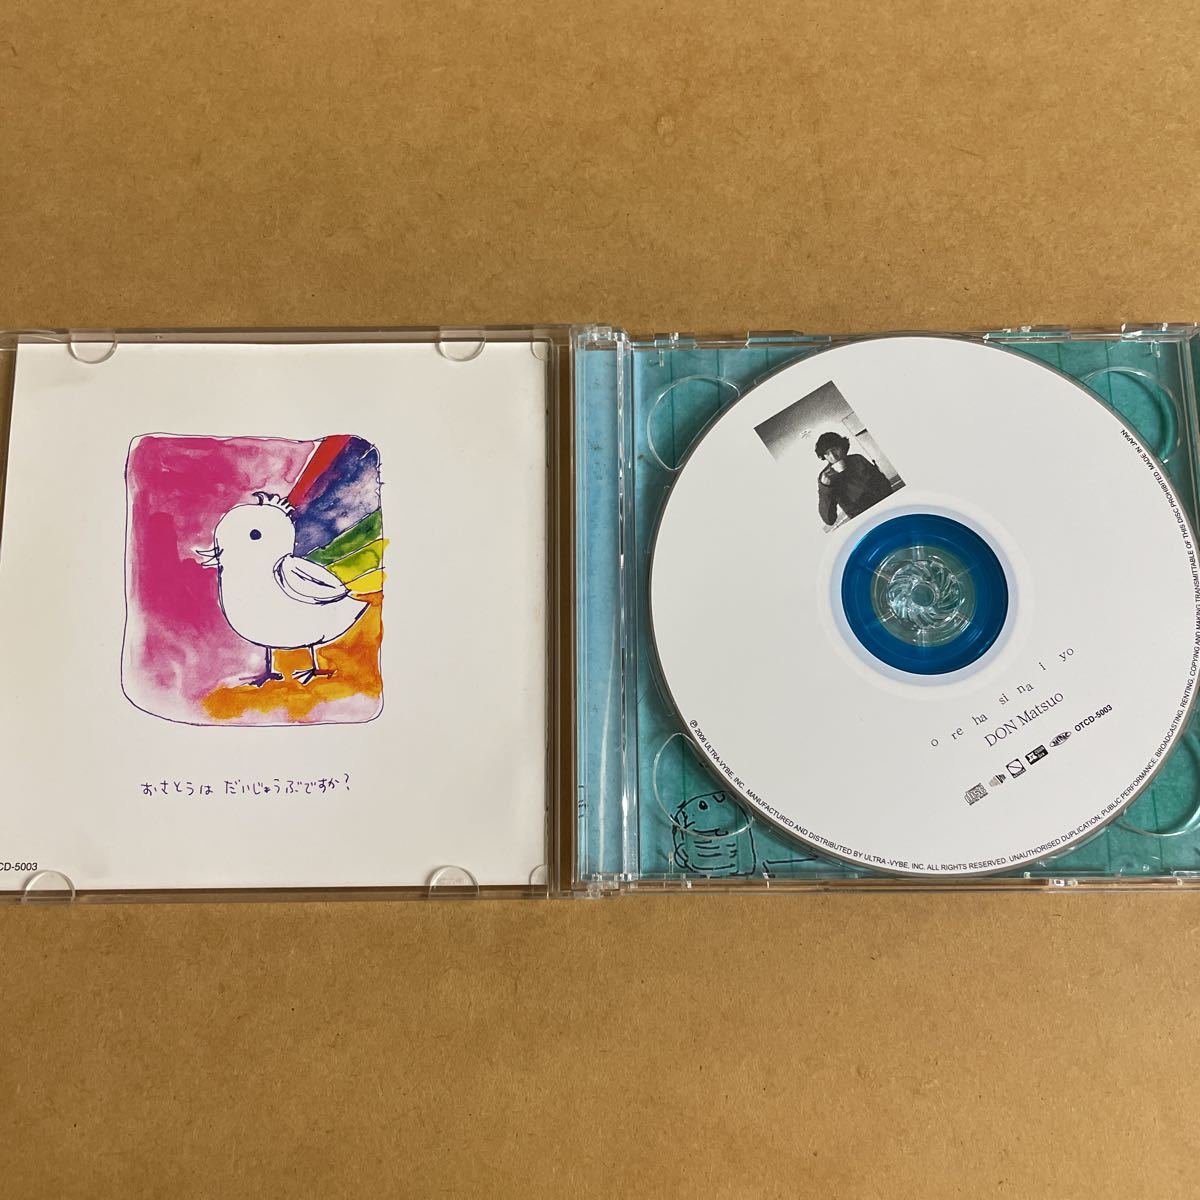 初回限定盤CD+DVD ドン・マツオ/オレハシナイヨ。ズボンズ Zoobombs Limited Express(has gone?) ni-hao! 二階堂和美 moools ママスタジヲ_画像4